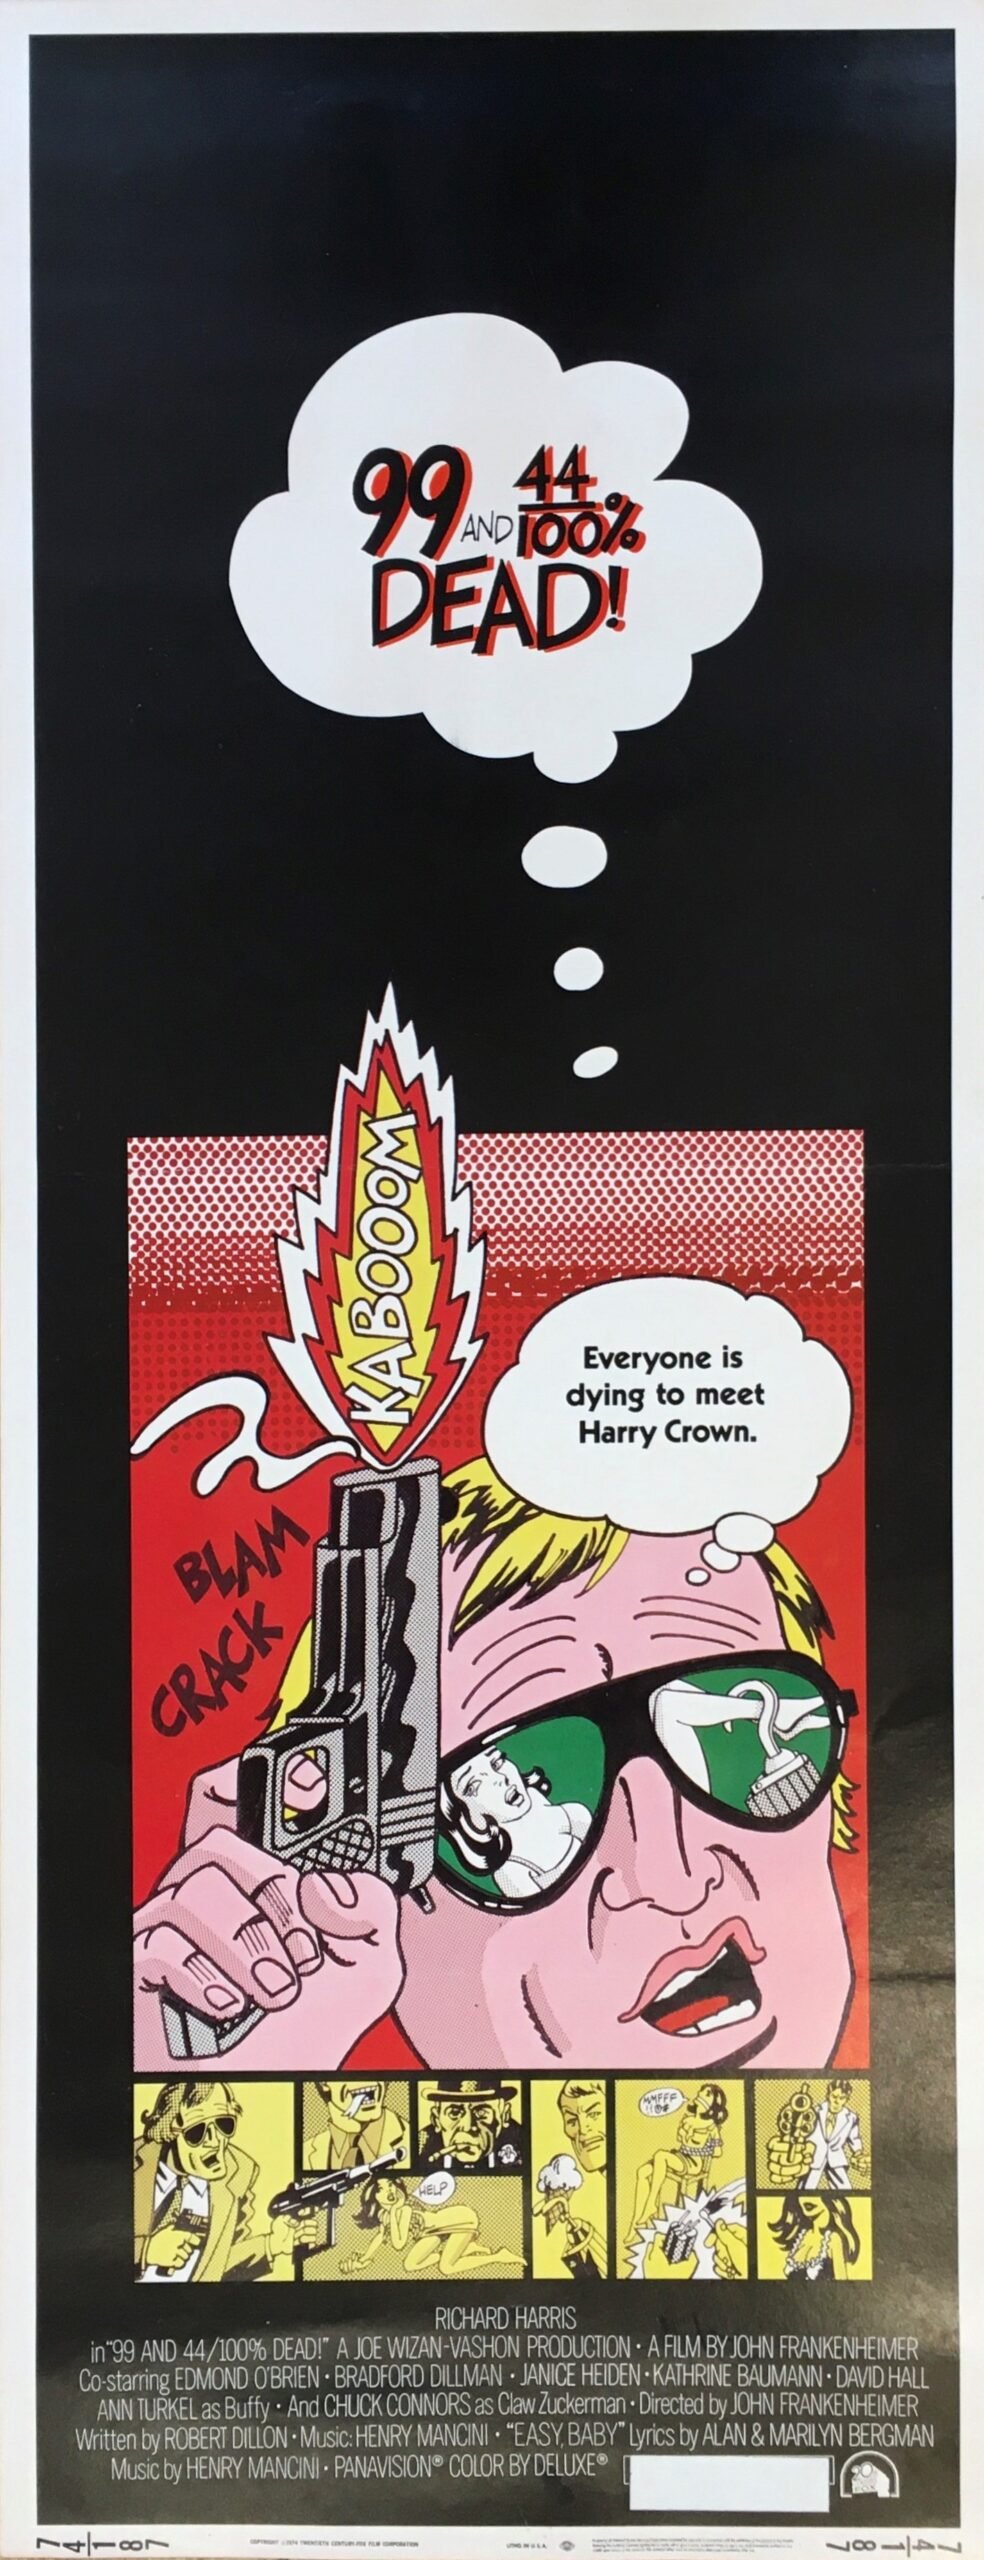 original vintage cinema movie poster with pop art design by Bill Gold, inspired by Roy Lichtenstein